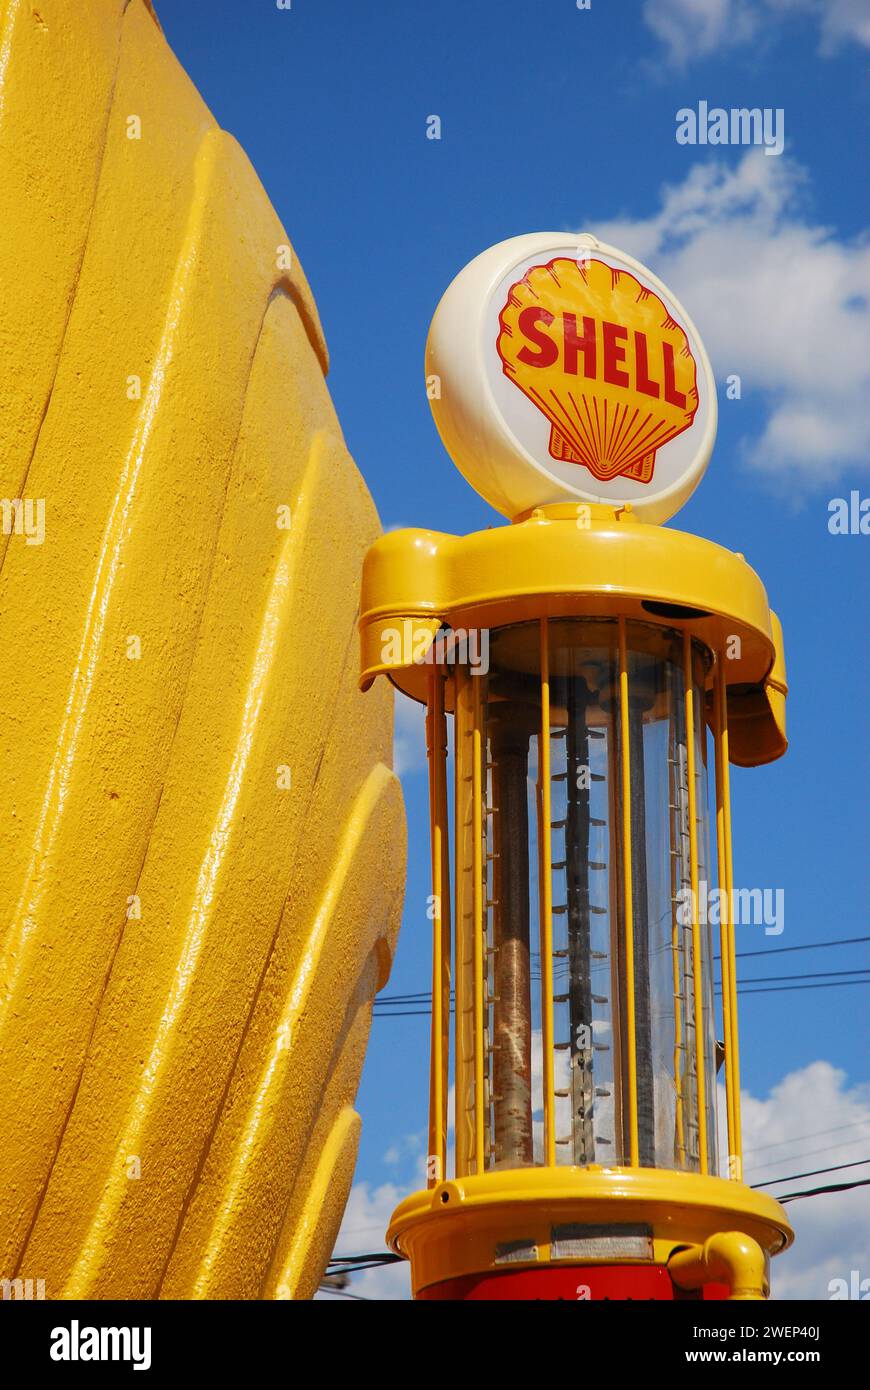 Una stazione di servizio Shell gialla d'epoca, costruita come il logo a forma di capesante dell'azienda, è ancora un'attrazione stradale Foto Stock